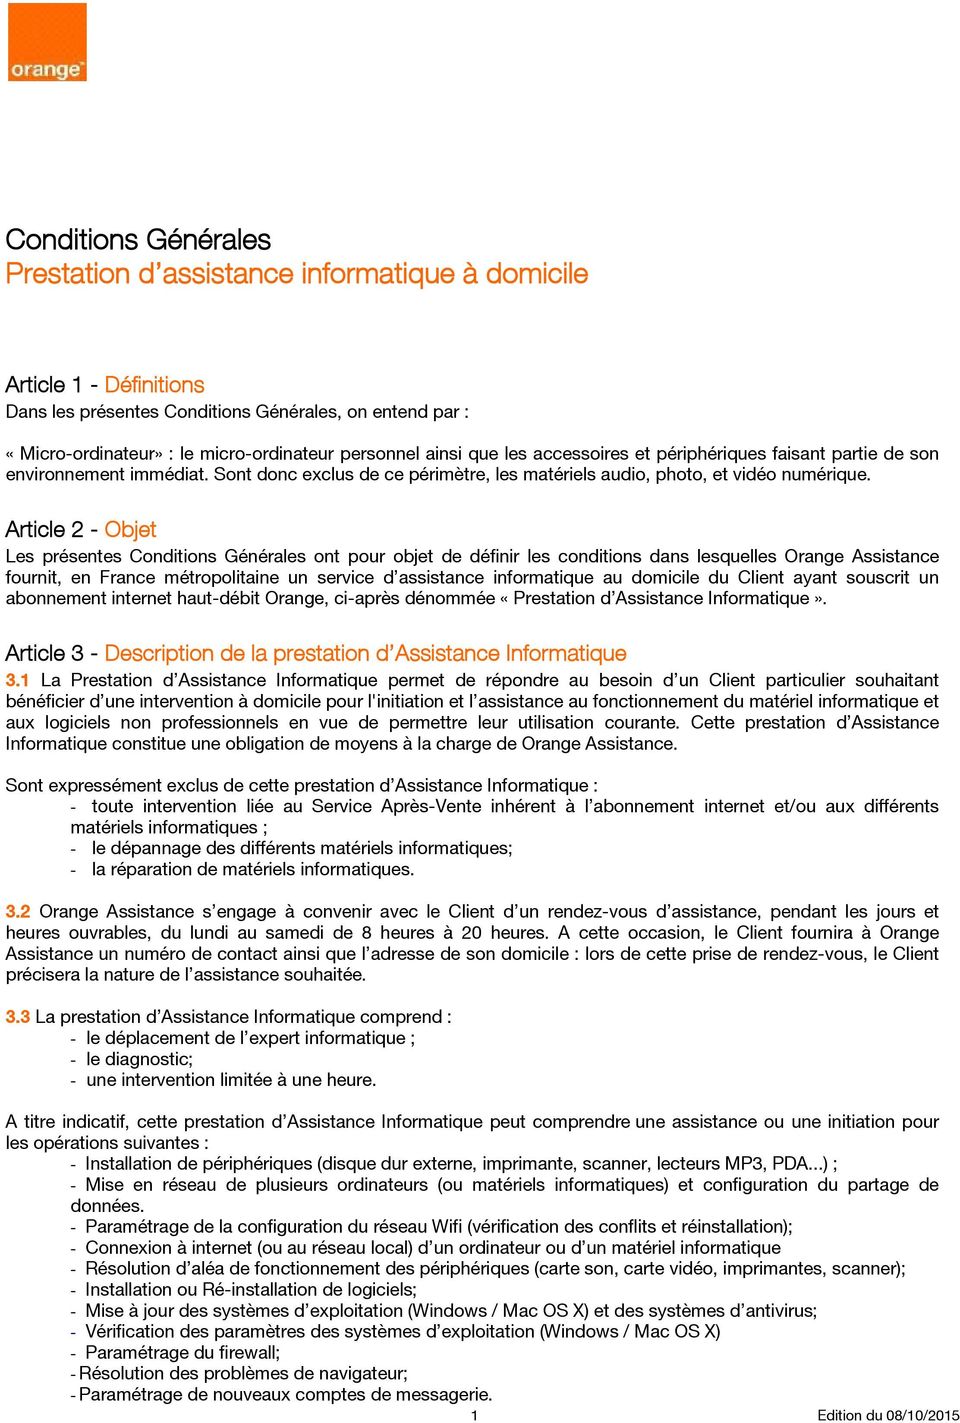 Article 2 - Objet Les présentes Conditions Générales ont pour objet de définir les conditions dans lesquelles Orange Assistance fournit, en France métropolitaine un service d assistance informatique